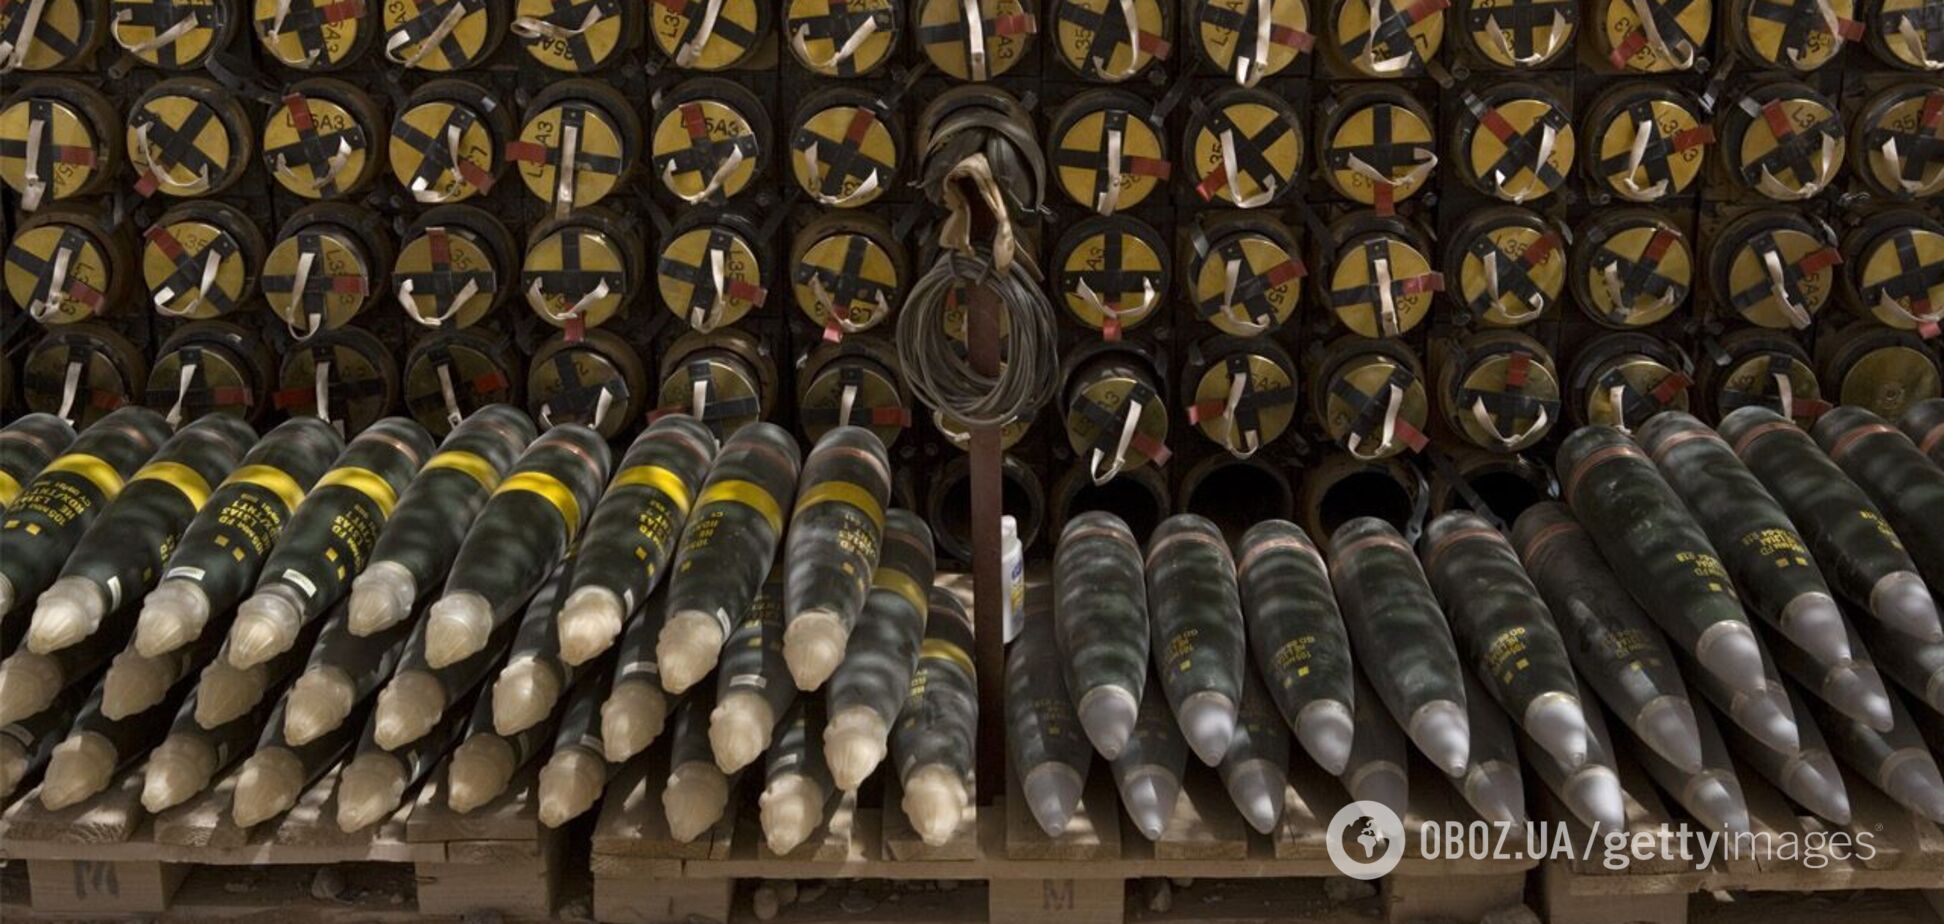 Большинство вооружений из пакета США уже в Европе: СМИ указали на важный нюанс с помощью Украине